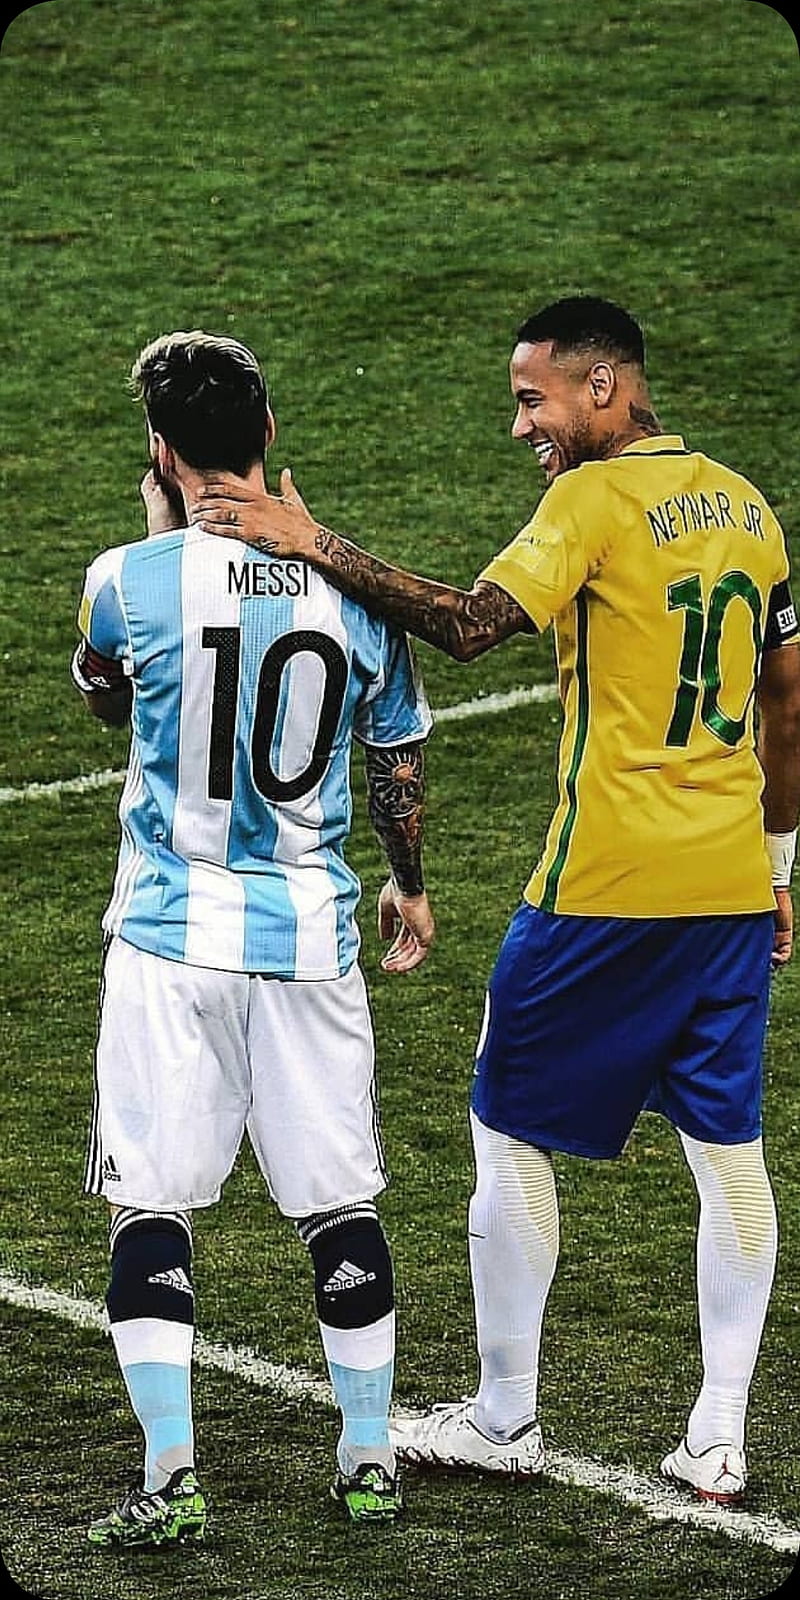 Điền vào khung hình của bạn với Messi Neymar Football để cảm nhận sức mạnh và kỹ năng của hai siêu sao bóng đá hàng đầu! Hãy tải xuống ảnh và hòa mình vào không khí của đôi bạn thân Neymar và Messi trên cỏ sân cùng những pha bóng đầy hào hứng!